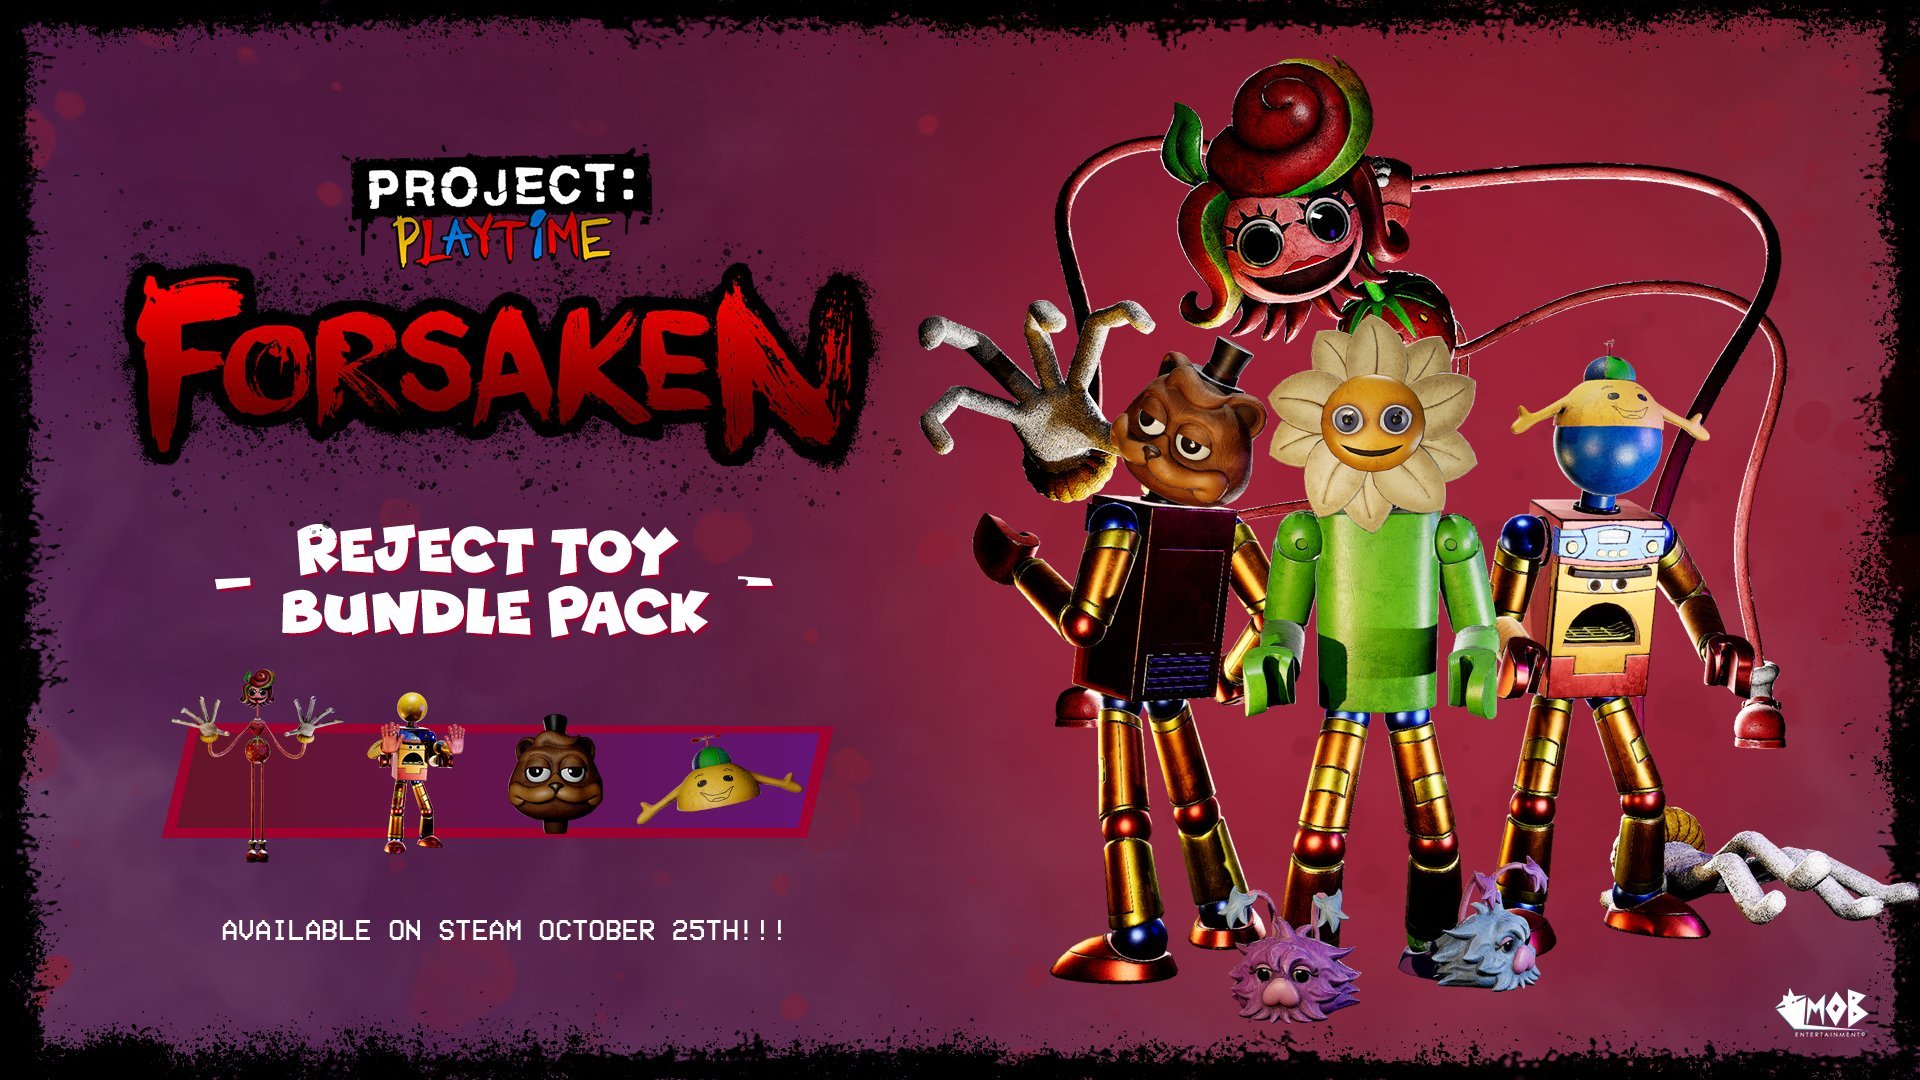 Project Playtime Forsaken Update News! 